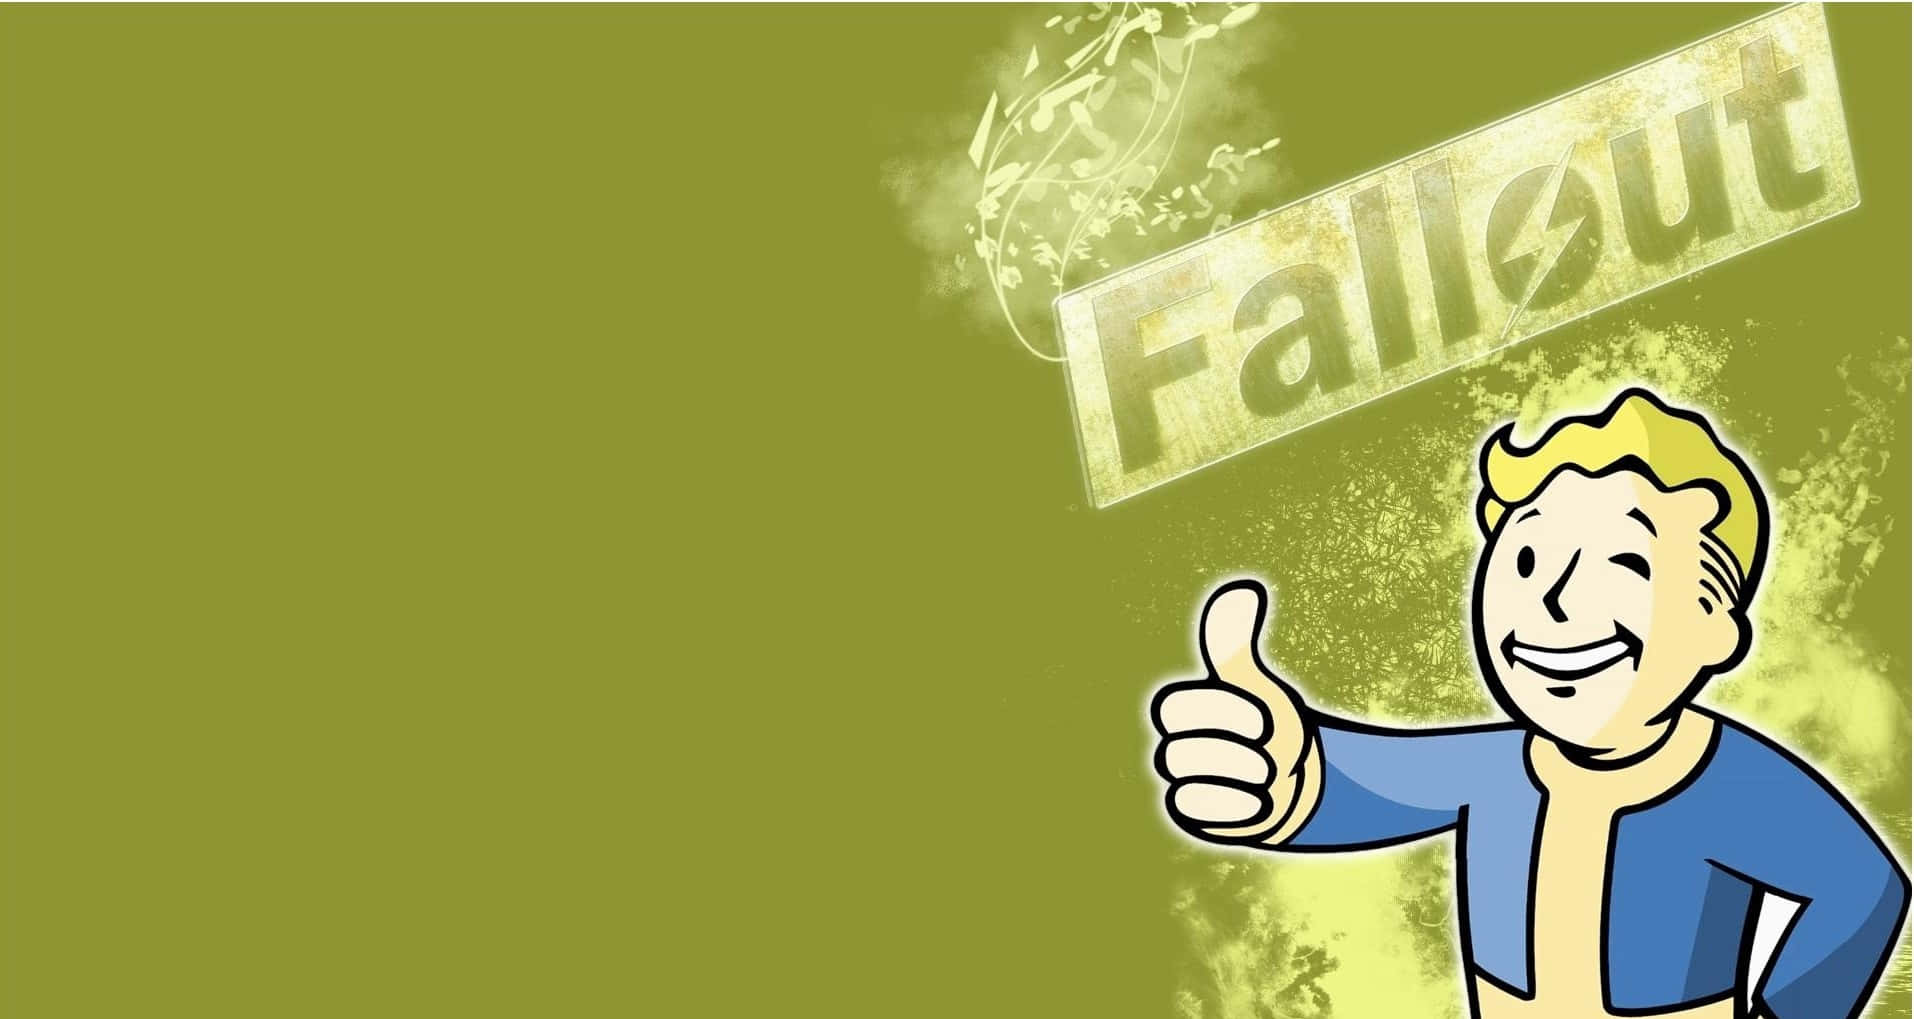 Derdauerhaft Beliebte Vault Boy Aus Dem Fallout-universum Wallpaper